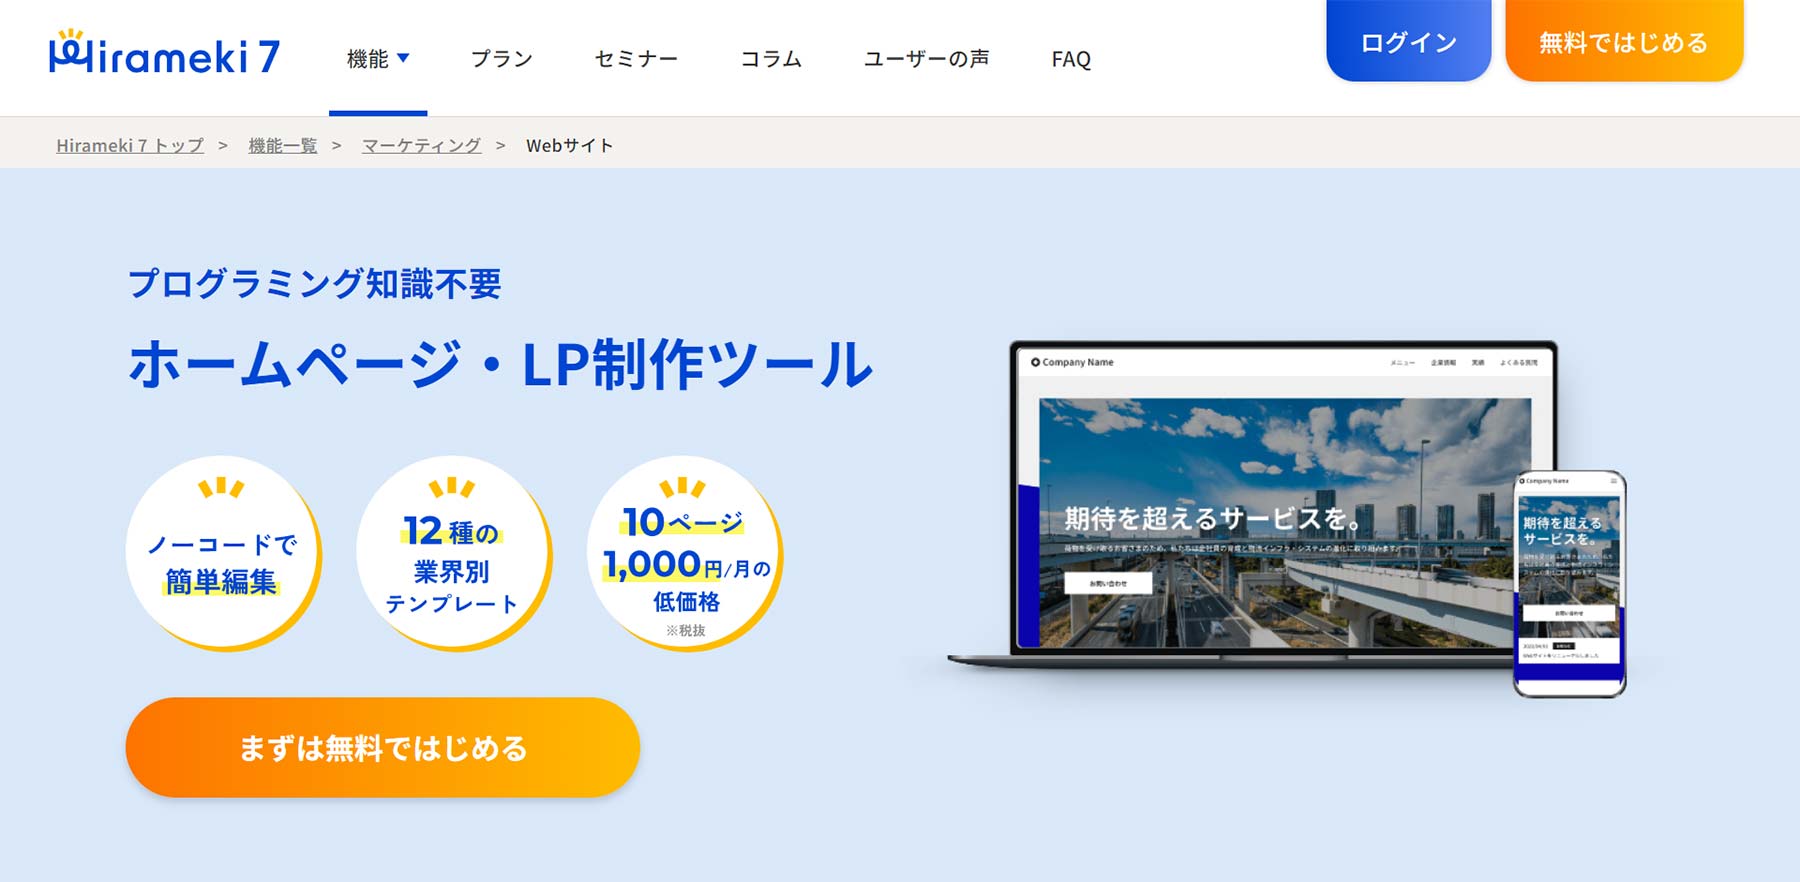 Hirameki 7公式Webサイト